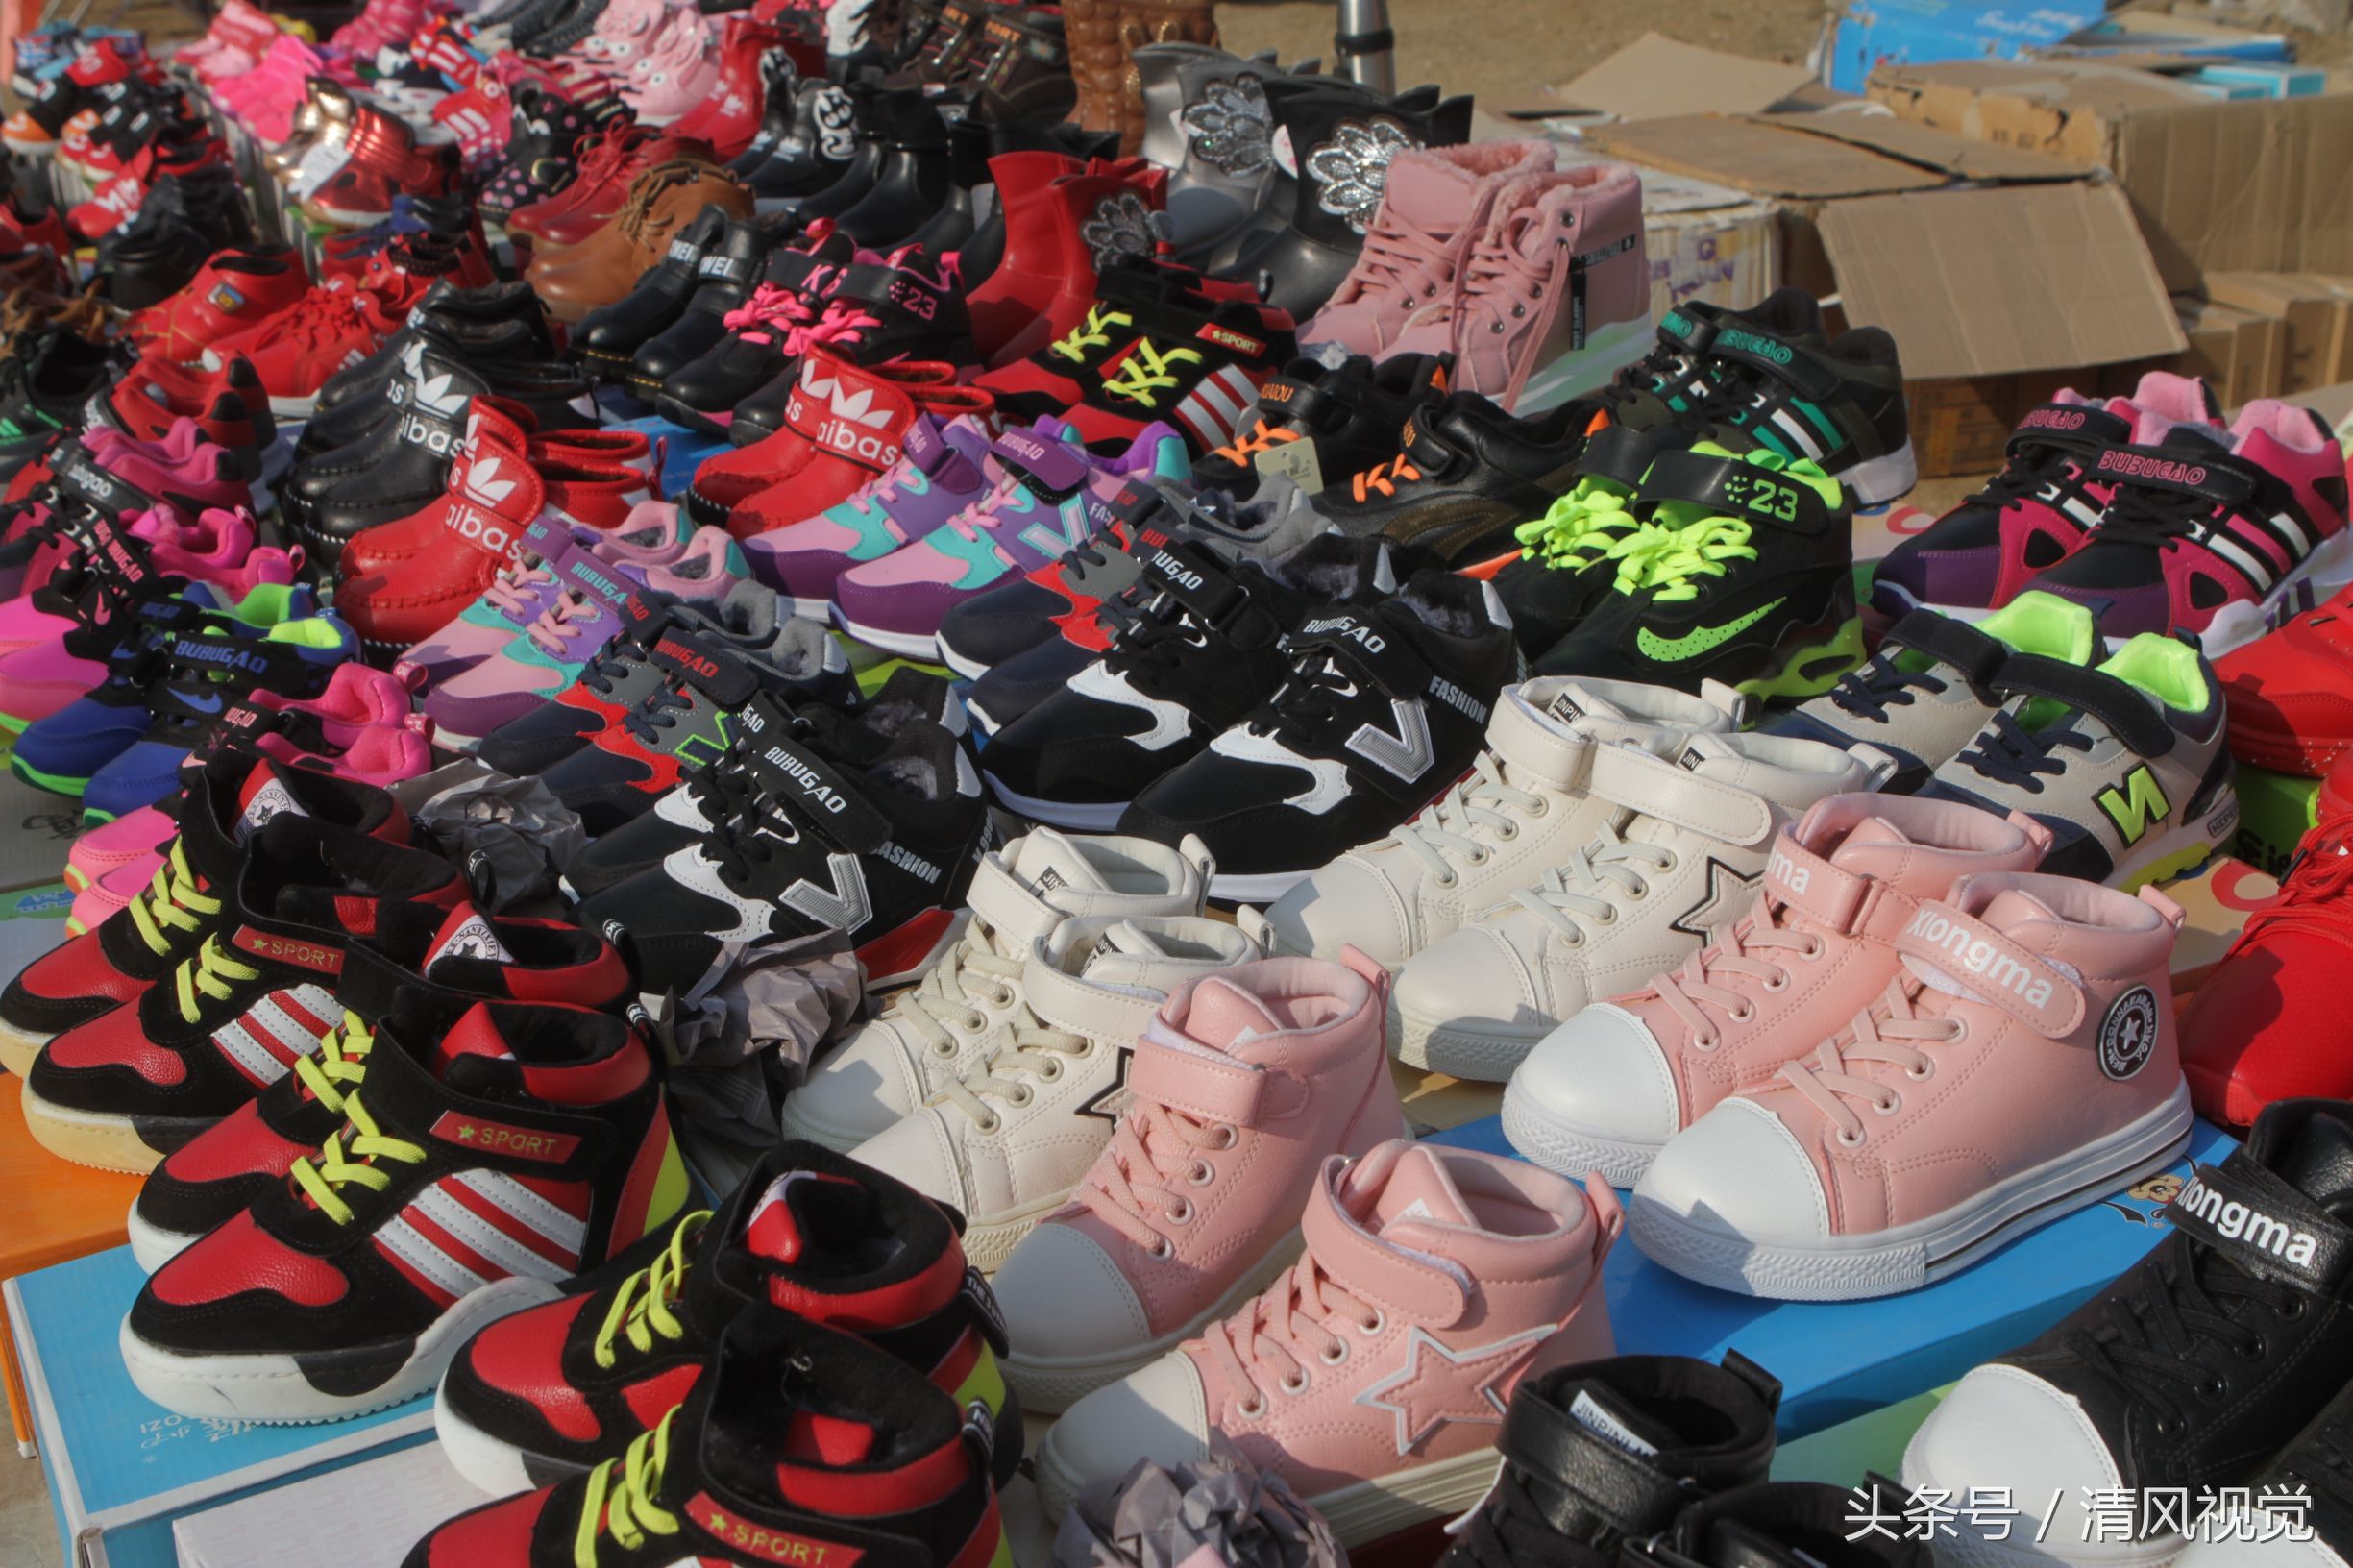 上学的孩子选购一双合适的运动鞋,在摊位上挑选了半天,又放下鞋子走了